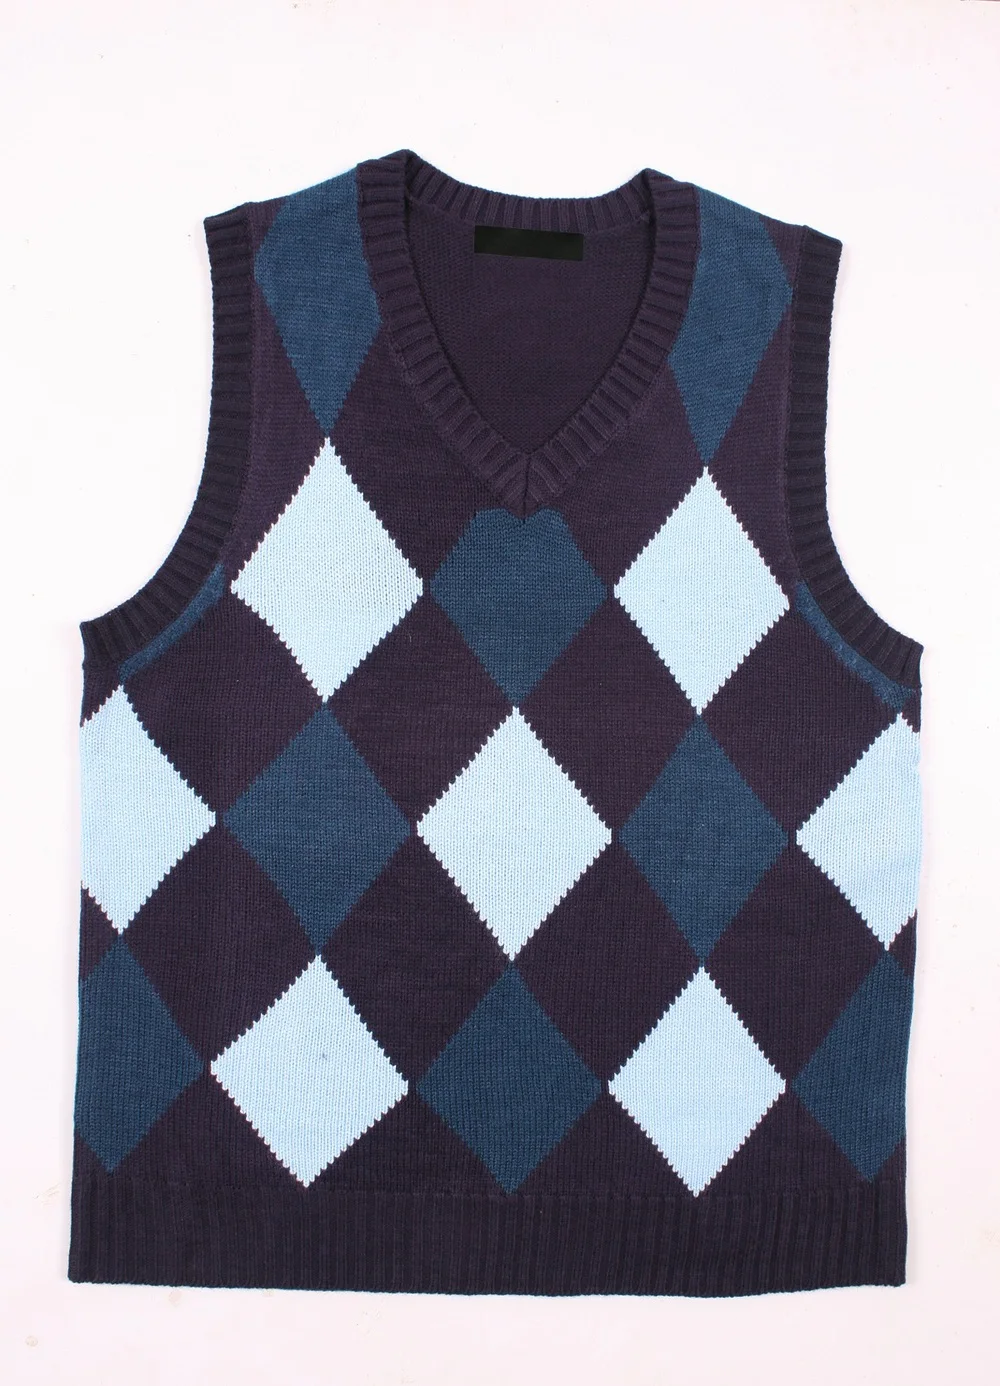 Diamond Sleeveless Sweater Knitting Pattern For Men - Buy ...